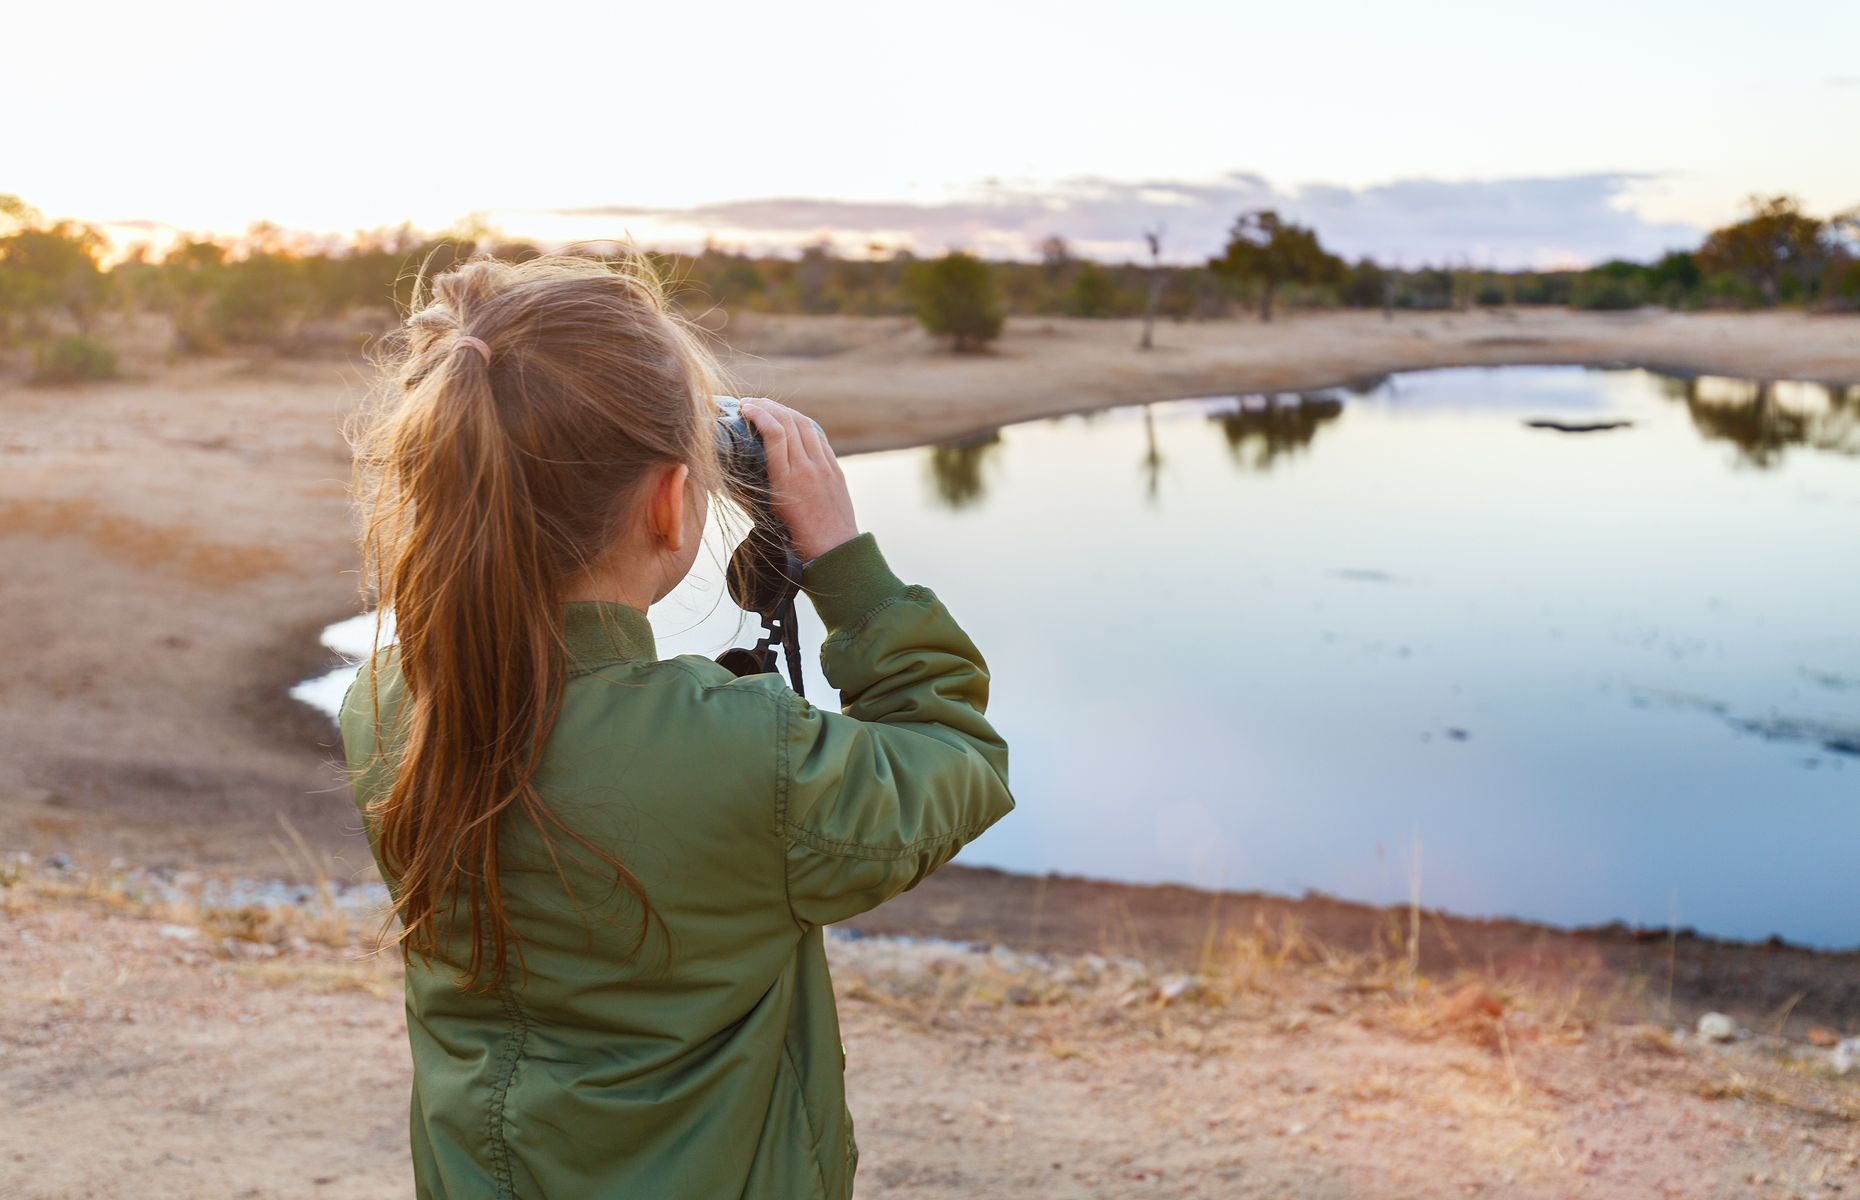 Girl on safari with binoculars